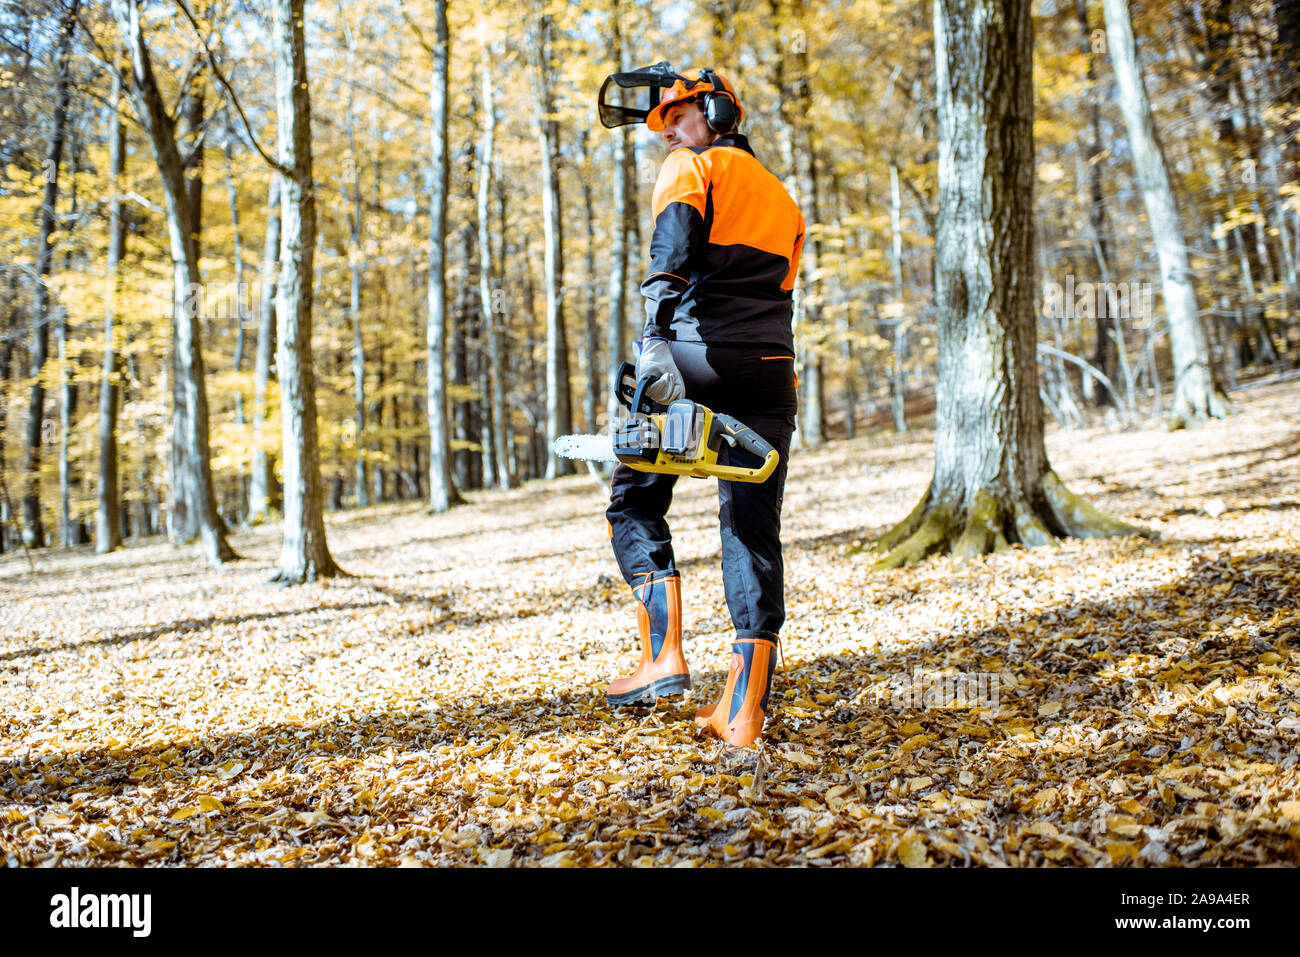 Ritratto di un professionista lumberjack in indumenti da lavoro protettiva a piedi con una motosega nel bosco, vista posteriore Foto Stock